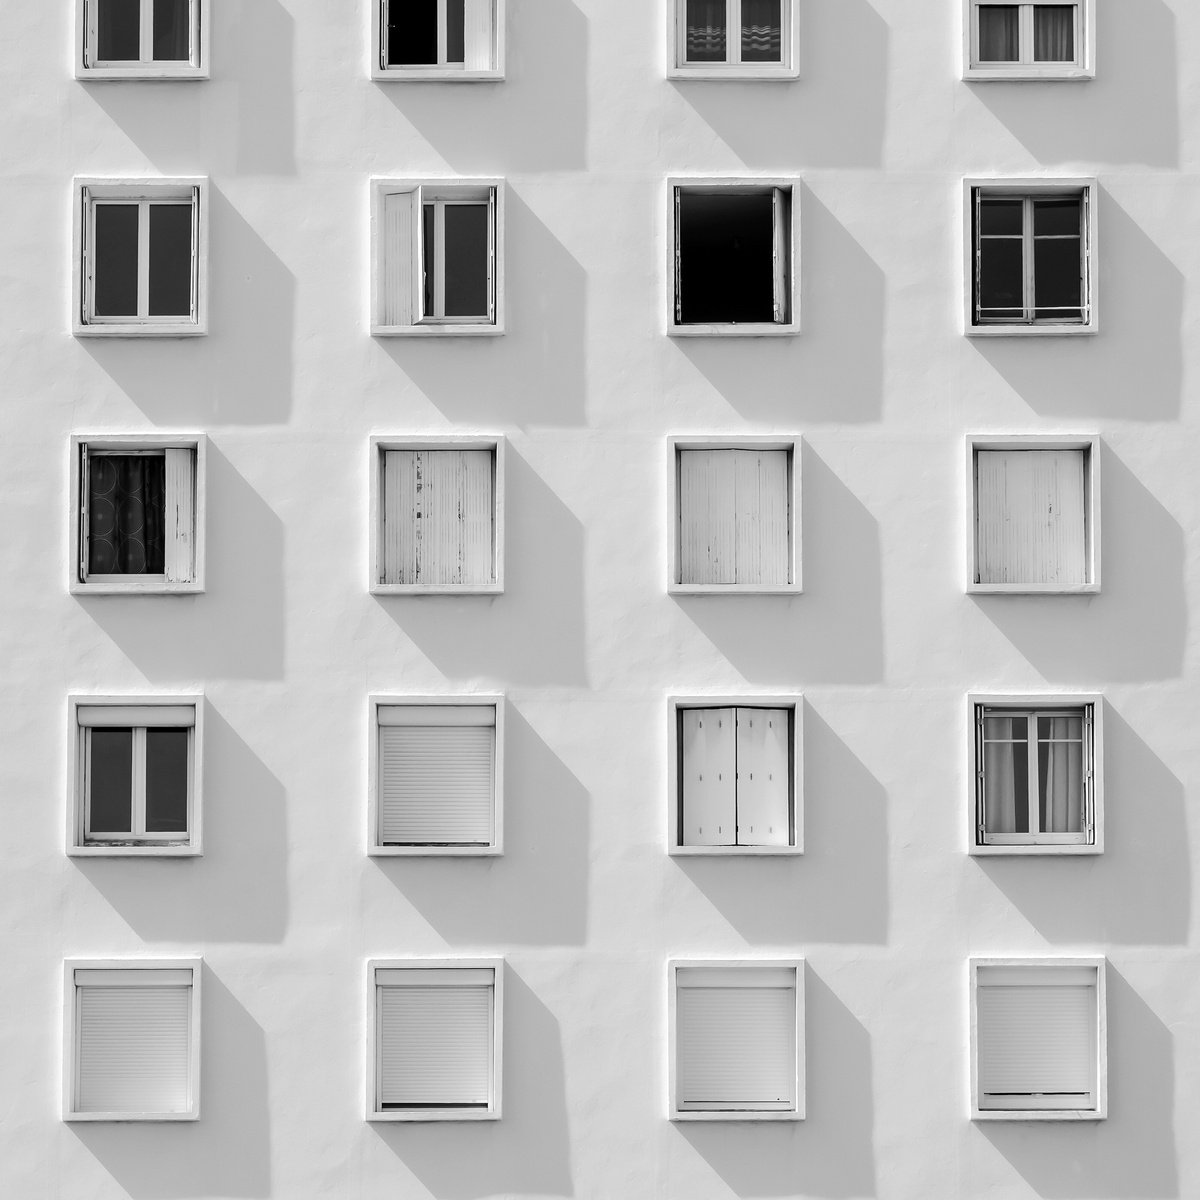 Fen�tres - composition minimaliste by Lionel Le Jeune